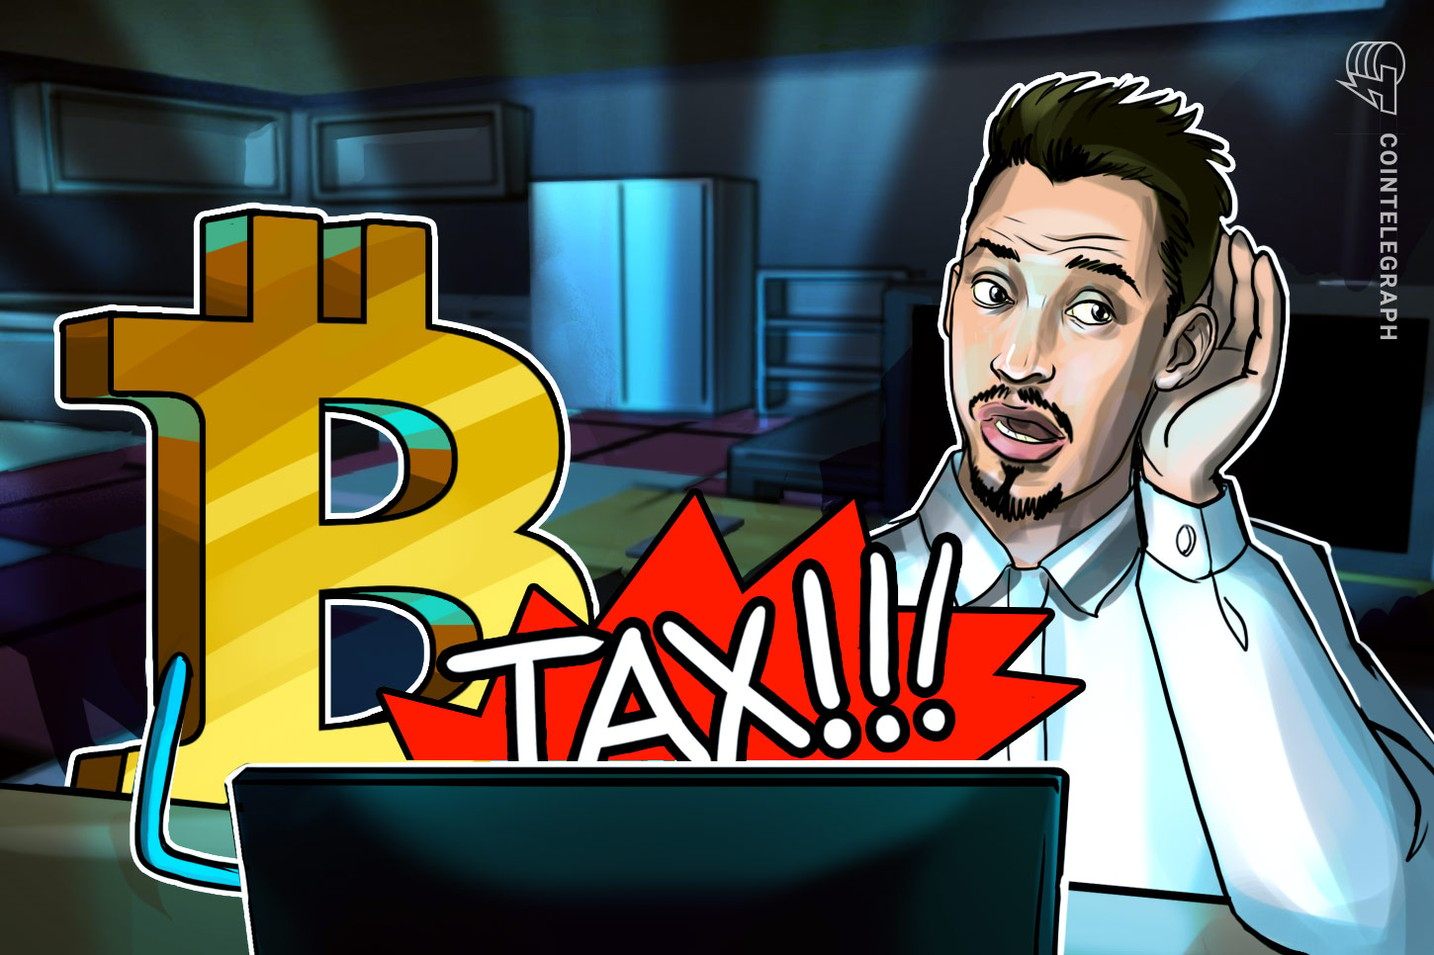  Las ganancias de Bitcoin están sujetas a impuestos en ciertos casos, dice la corte suprema de Dinamarca 